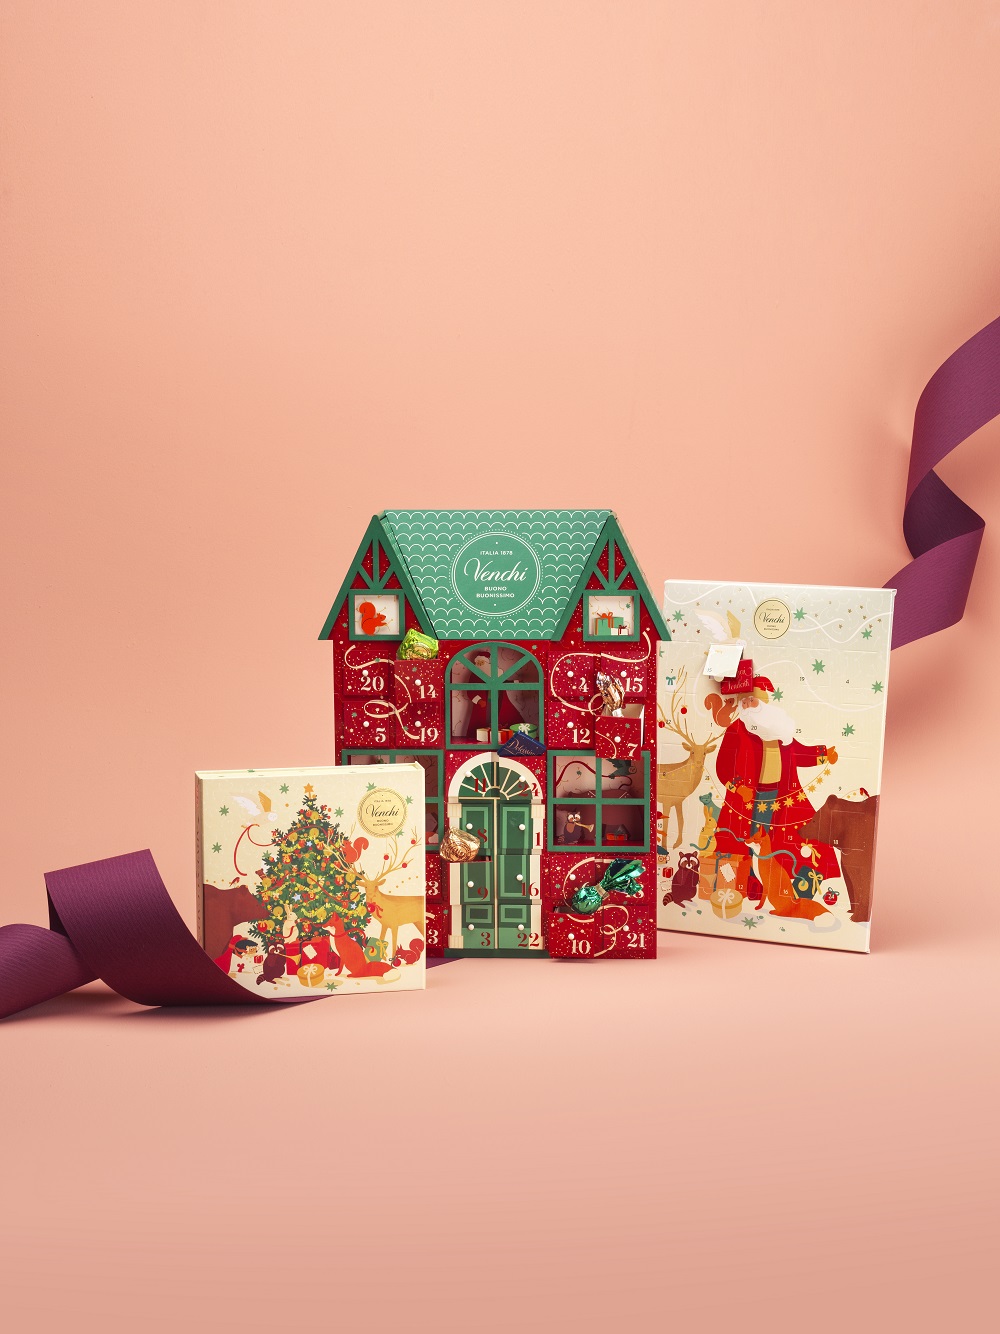 聖誕驚喜倒數巧克力日曆禮盒($680)、聖誕倒數巧克力日曆木禮盒 ($1,250)、聖誕倒數巧克力日曆 ($220)  (由左至右)——聖誕禮物早鳥優惠